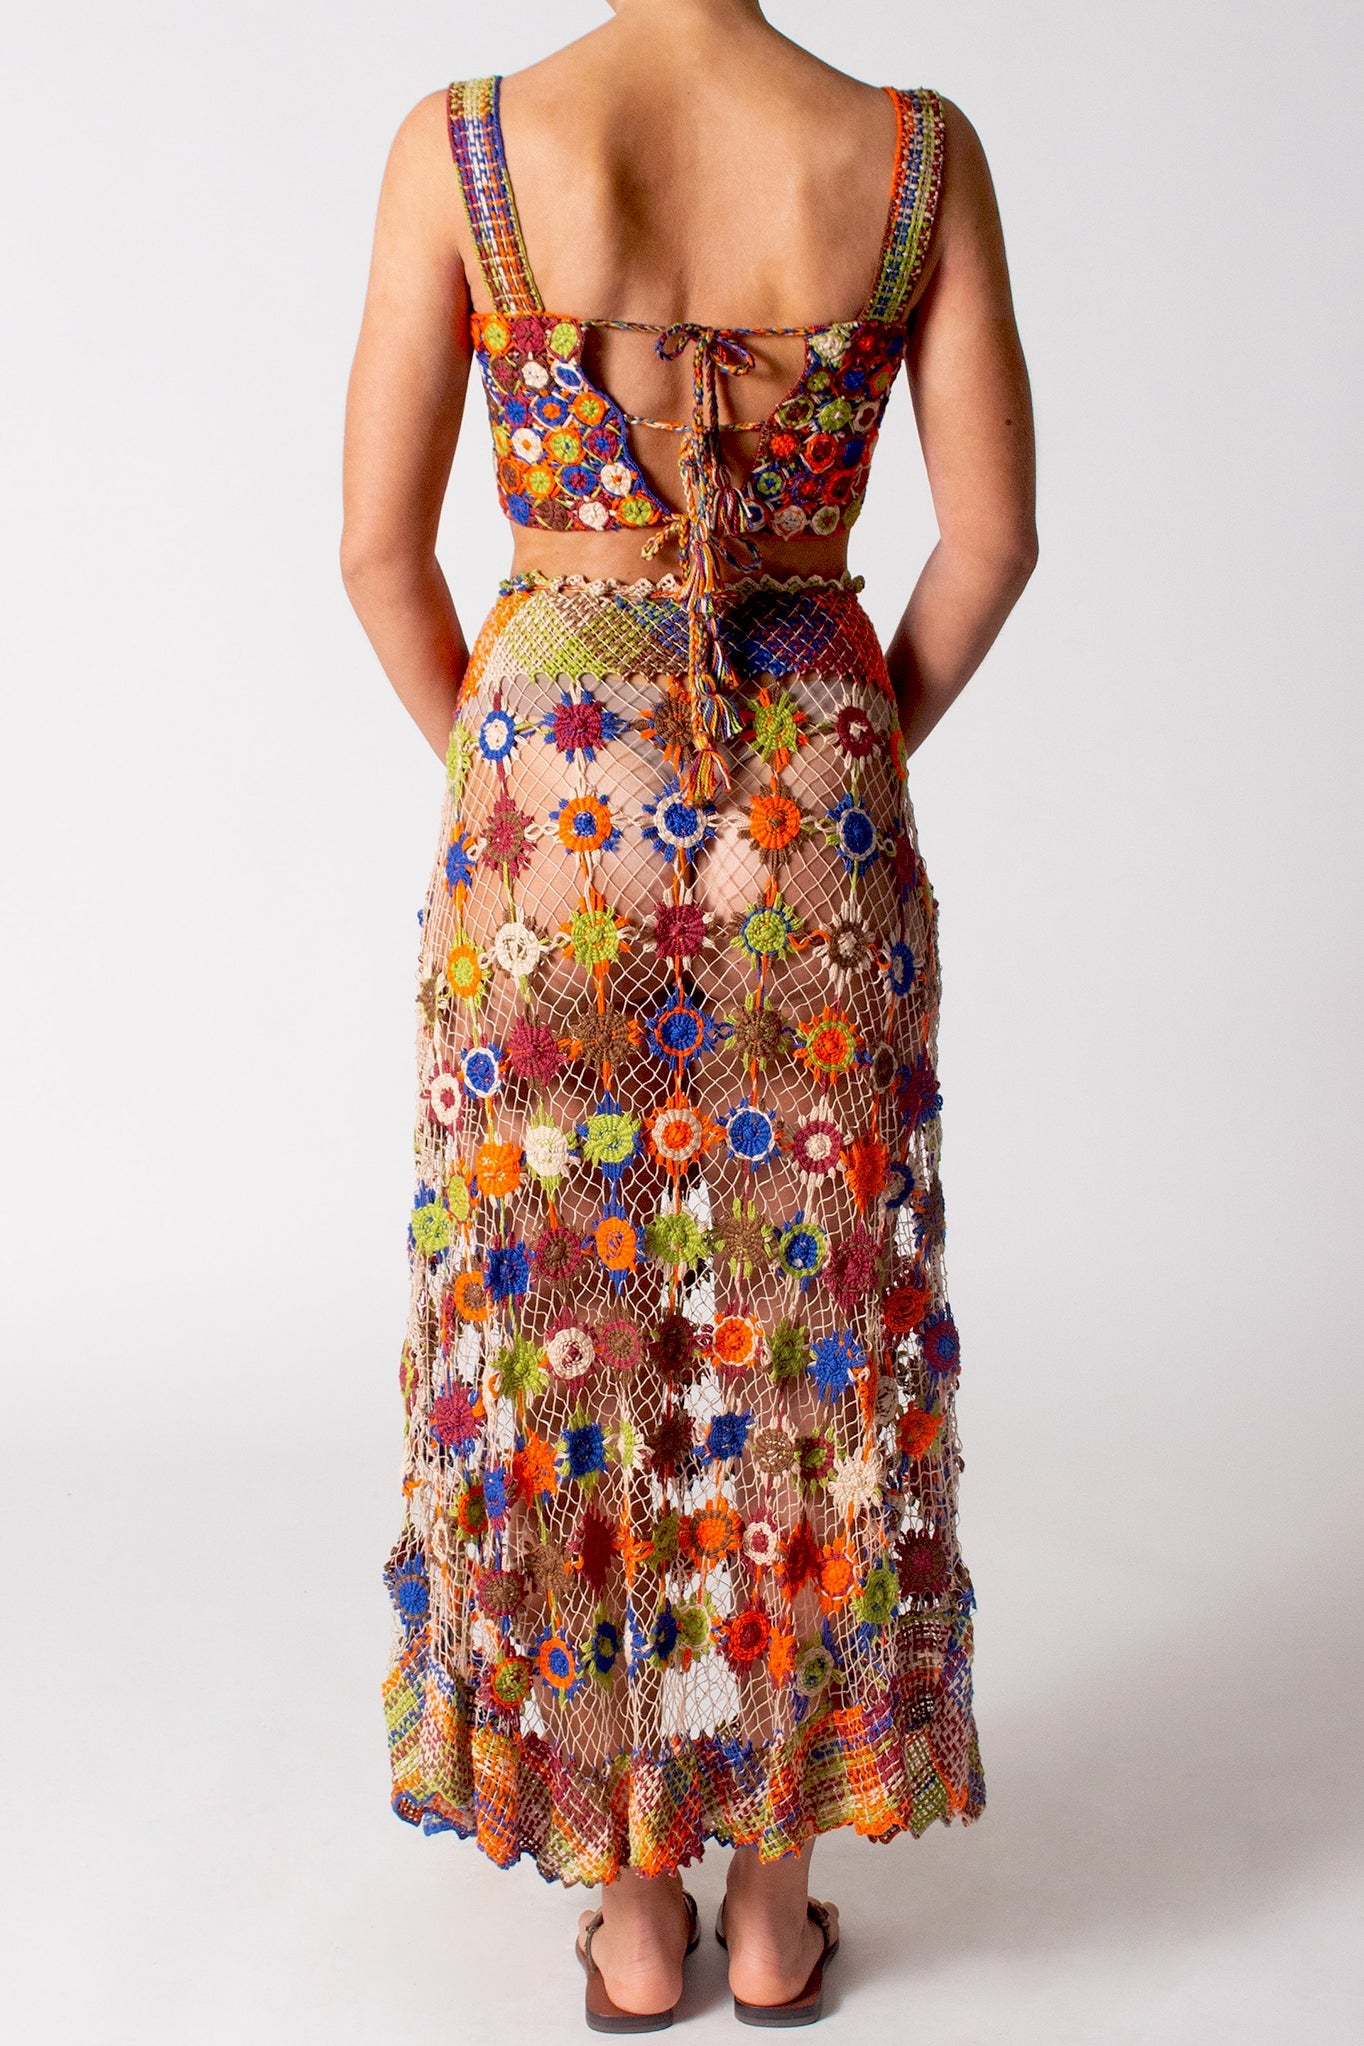 Fernanda Hand Knit Bralette by Miguelina